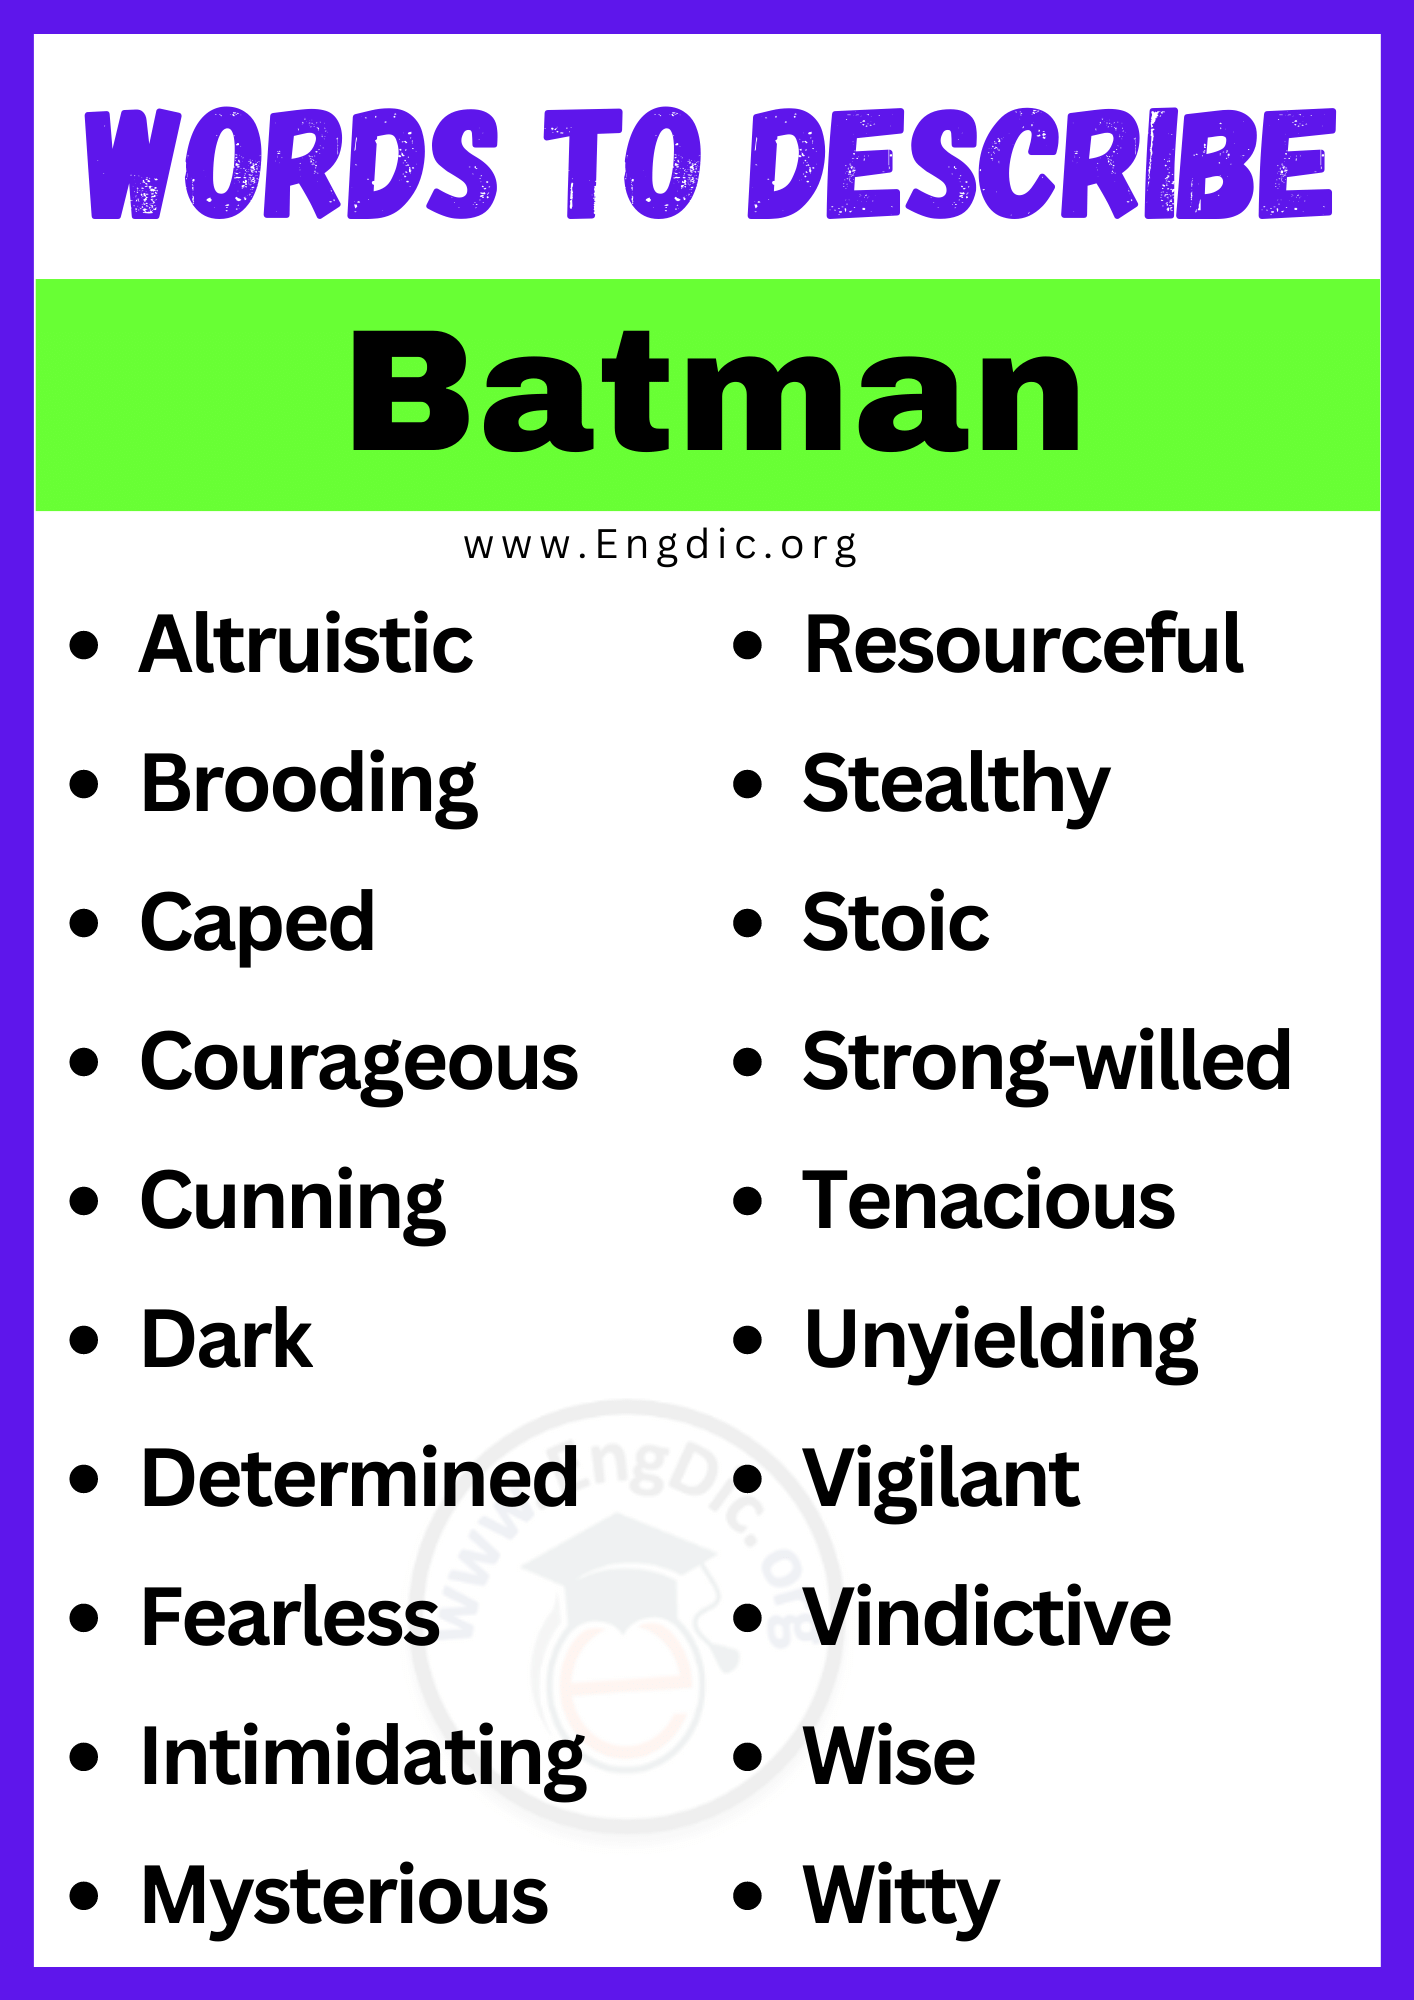 Words to Describe Batman